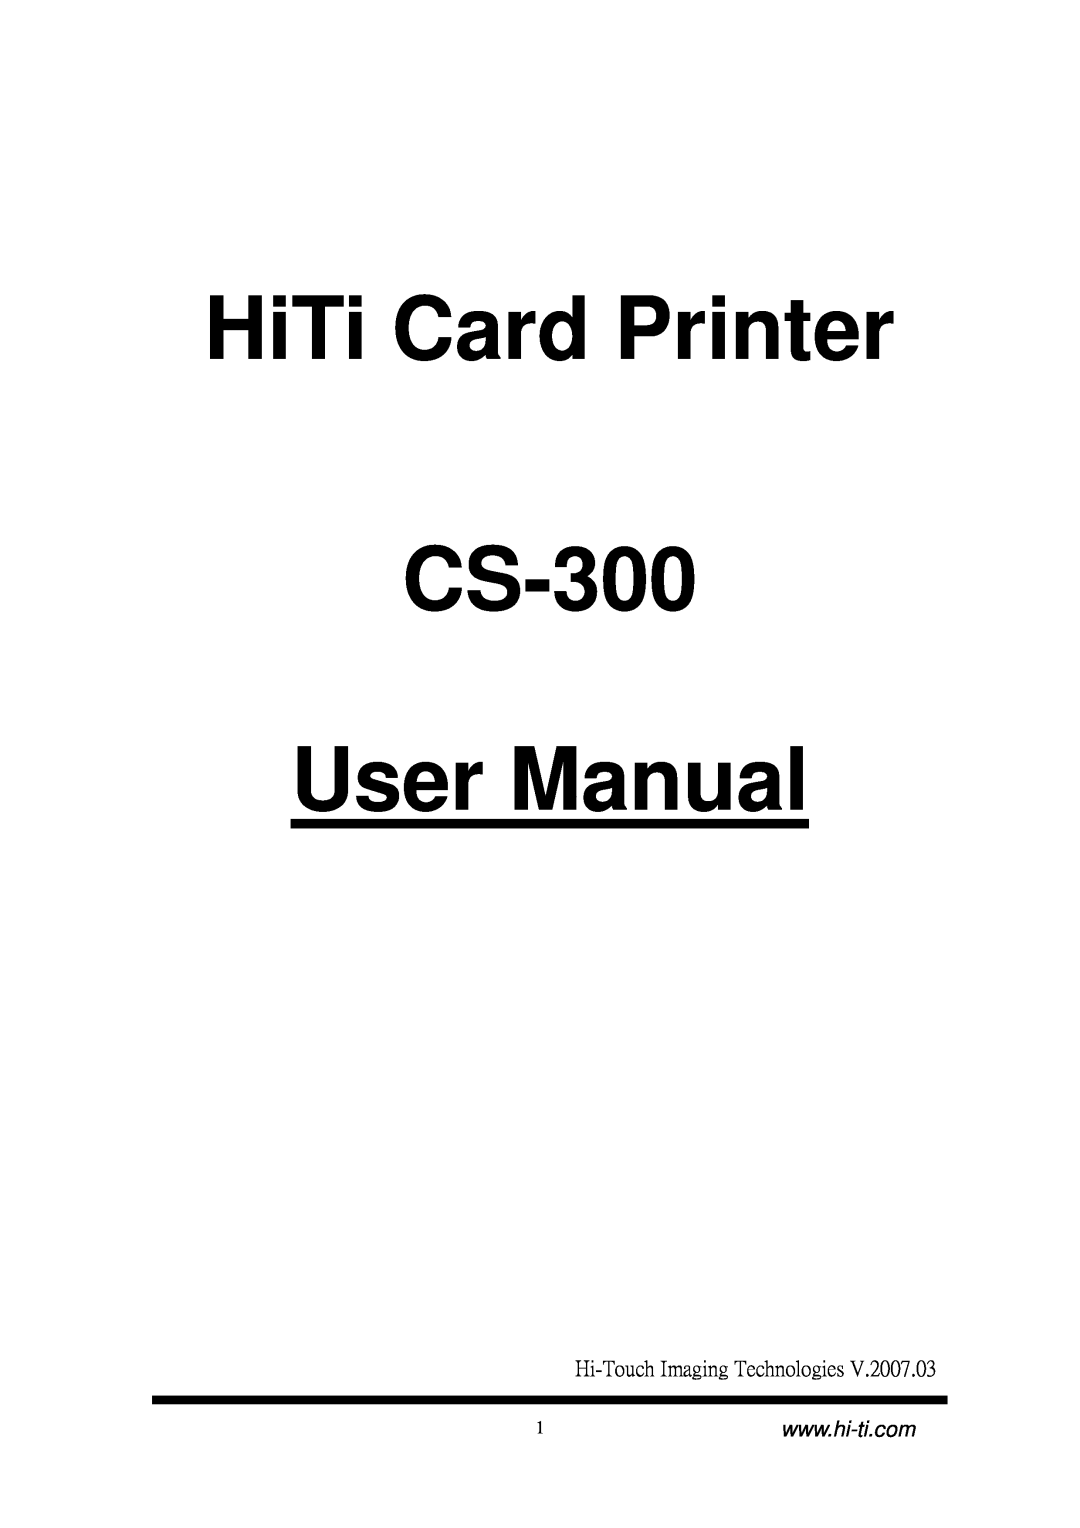 Hi-Touch Imaging Technologies user manual Hi-Touch Imaging Technologies, HiTi Card Printer CS-300 User Manual 